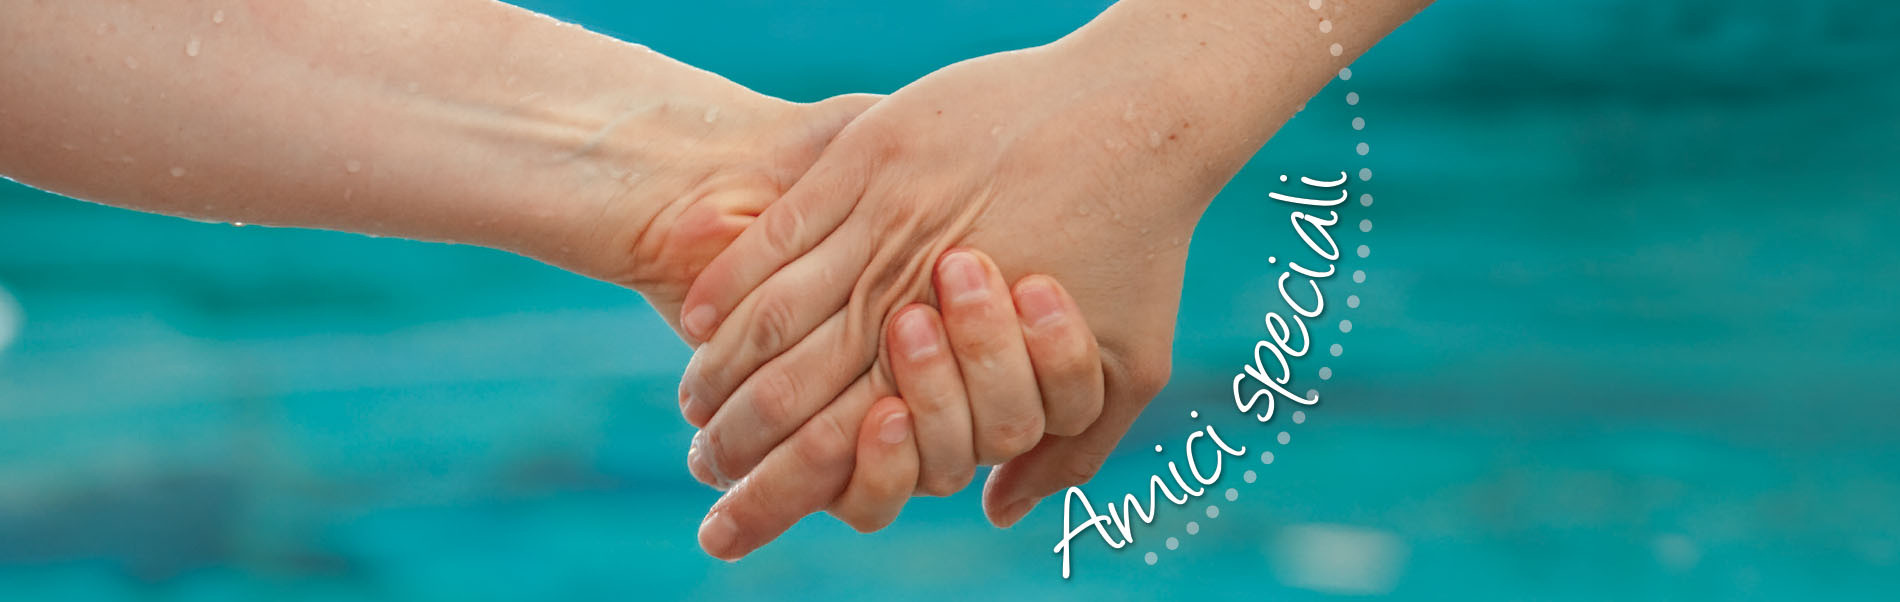 Due mani si stringono, dietro si vede sfuocata l'acqua di una piscina. Vicino alle mani c'è la scritta "Amici Speciali".